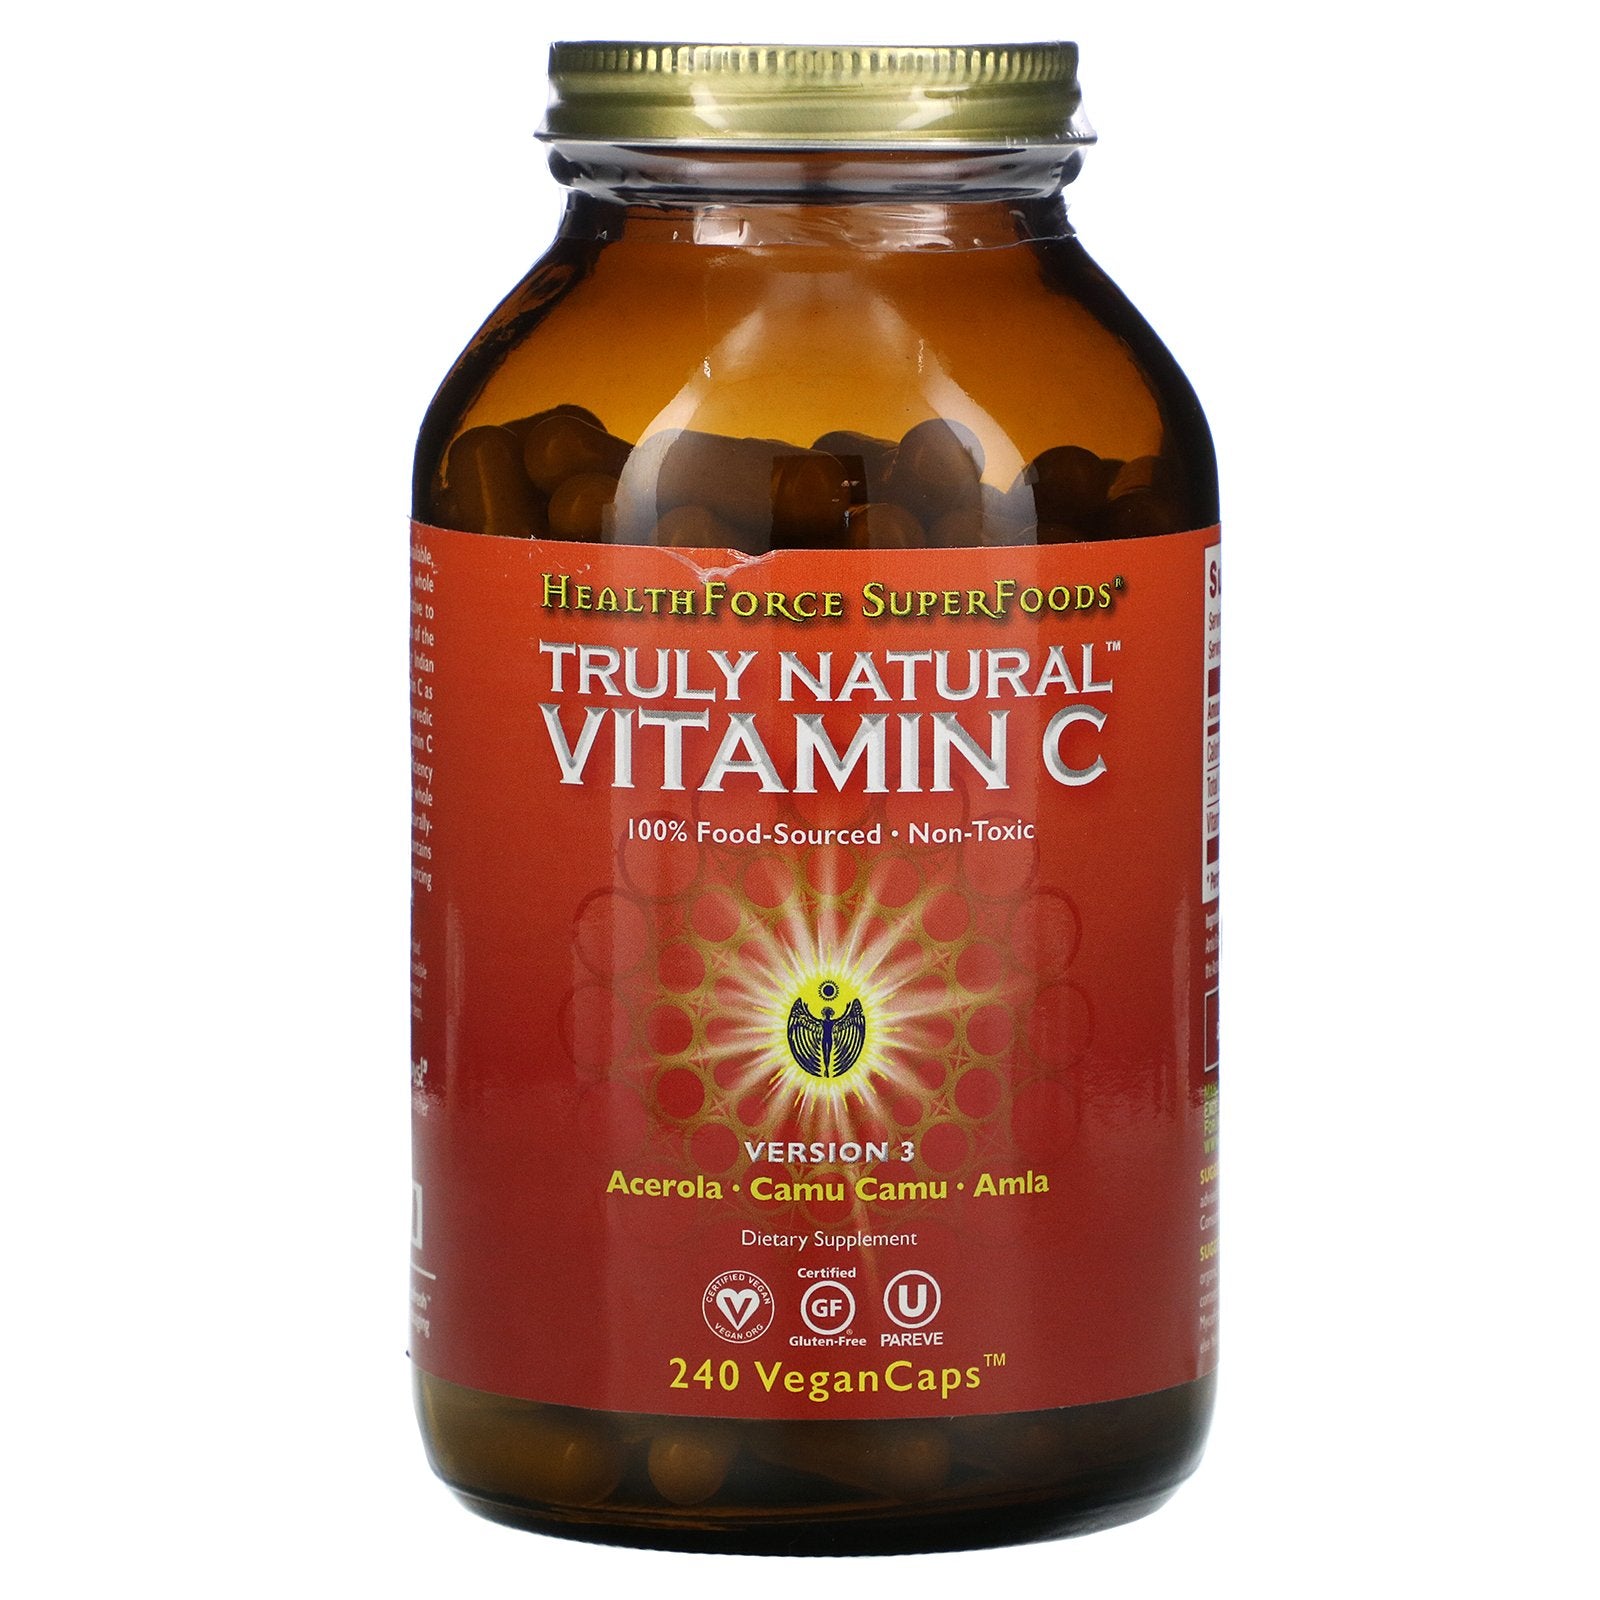 HealthForce Superfoods, Truly Natural Vitamin C, Version 3, 240 Vegan Caps